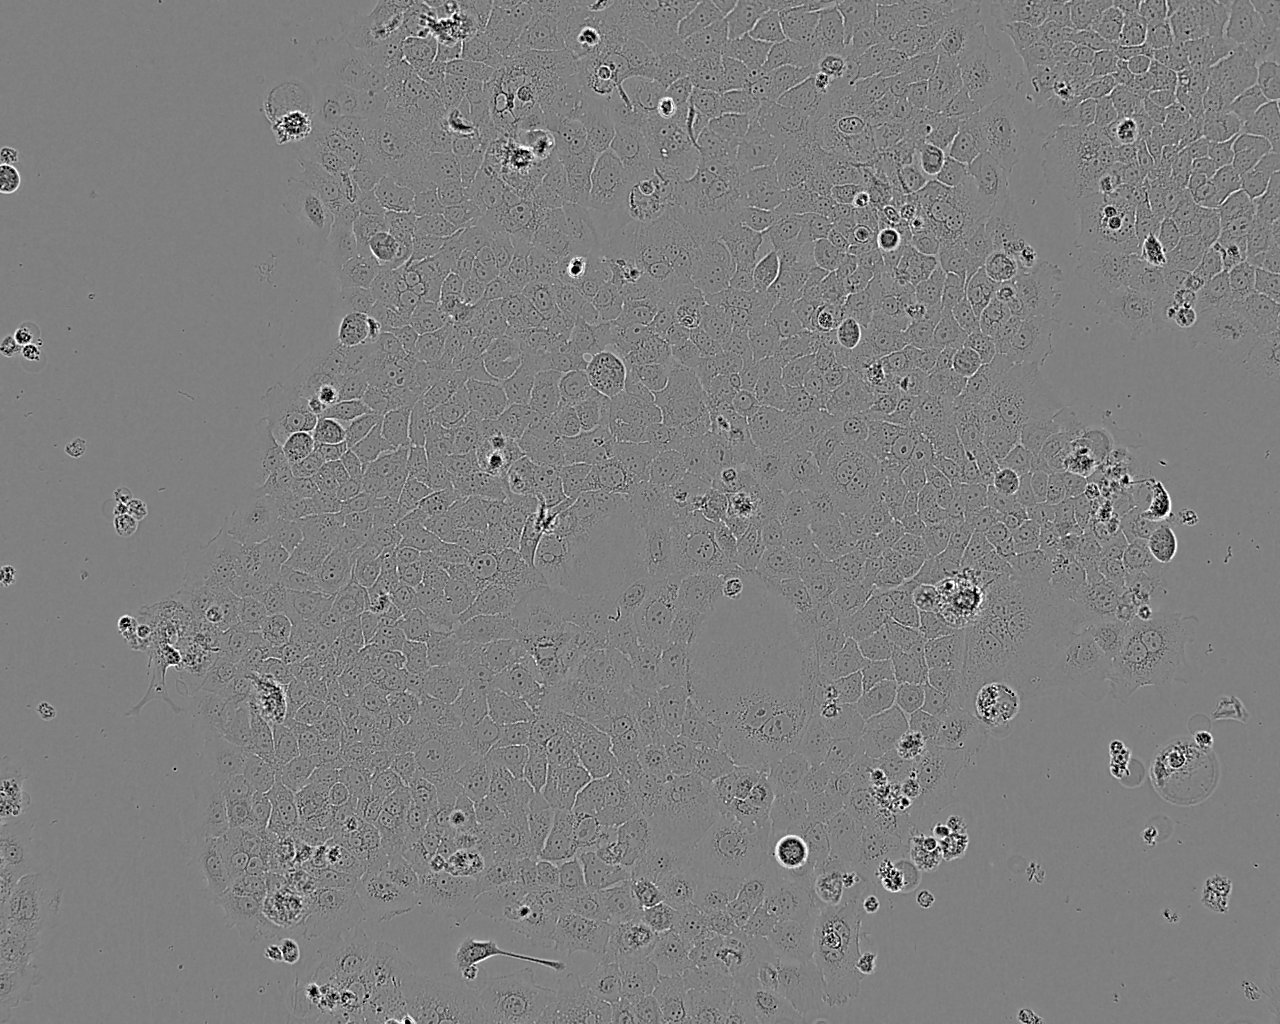 TE-8 Cell:人食管癌细胞系